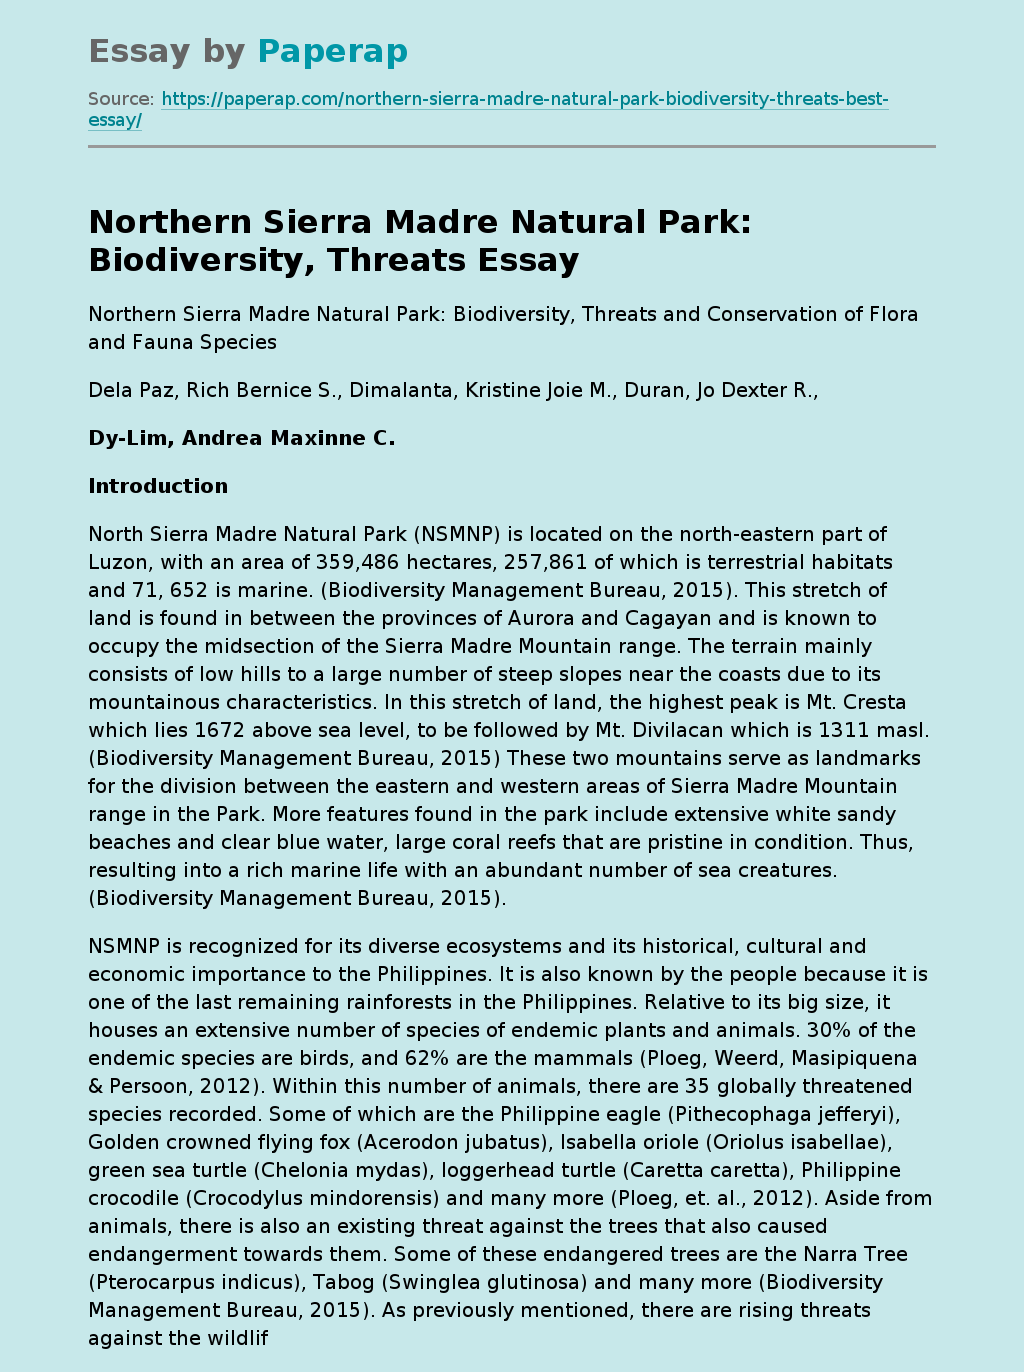 Northern Sierra Madre Natural Park: Biodiversity, Threats